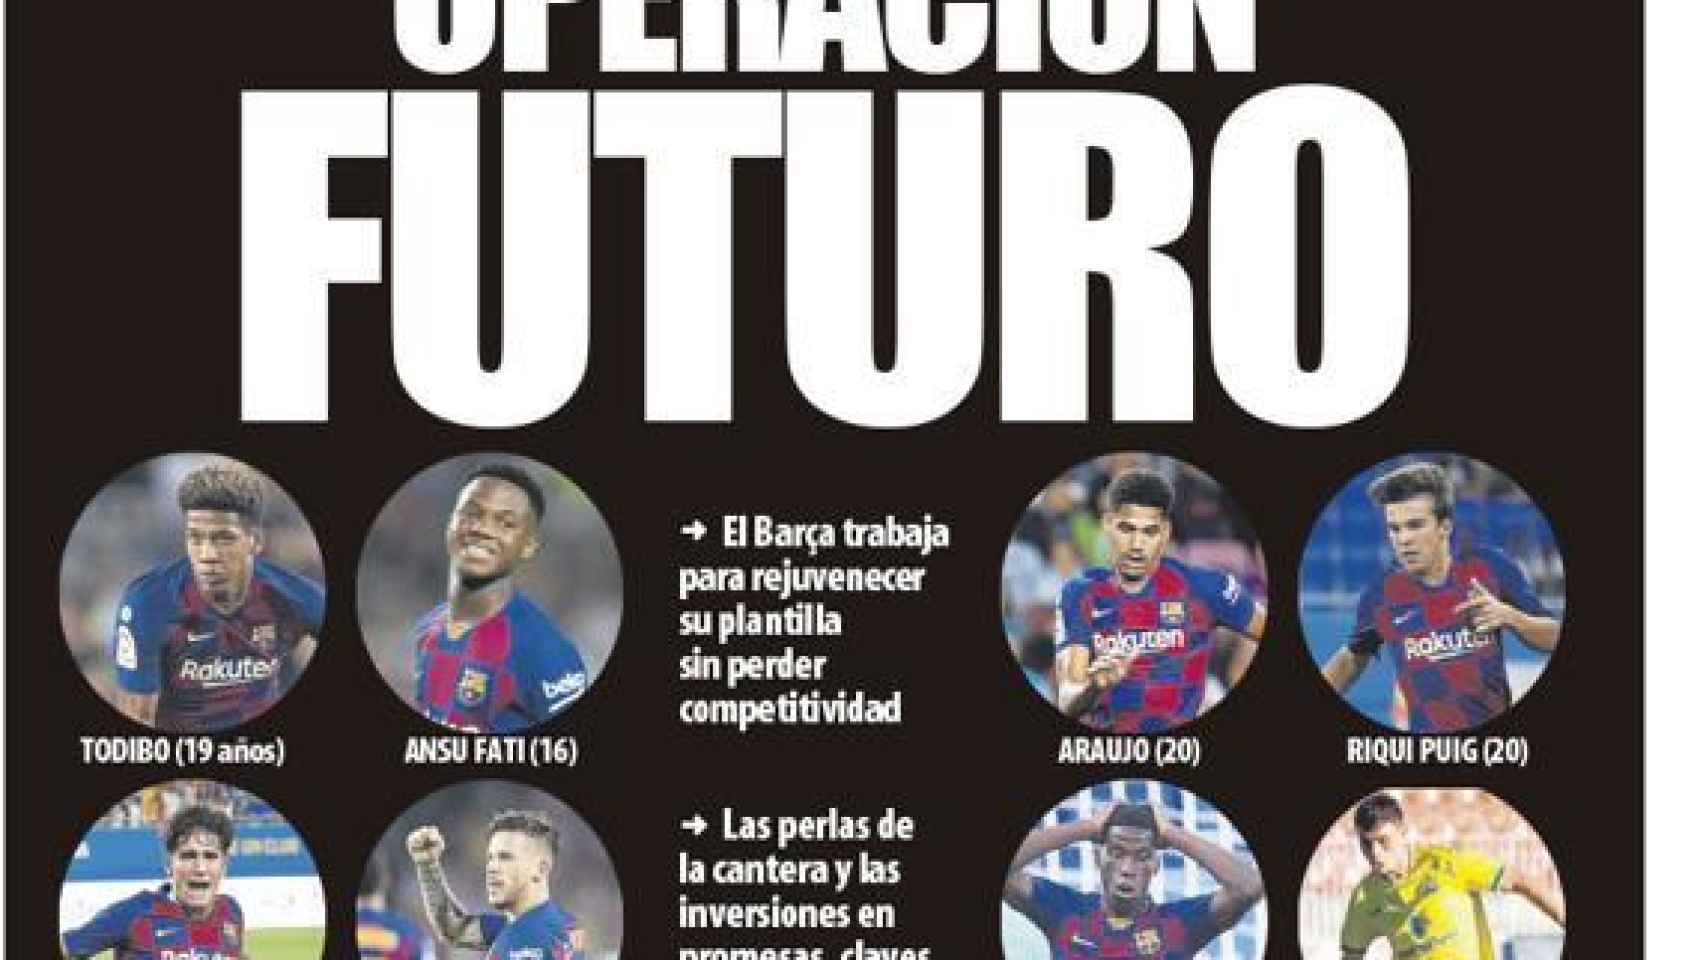 La portada del diario Mundo Deportivo (09/10/2019)